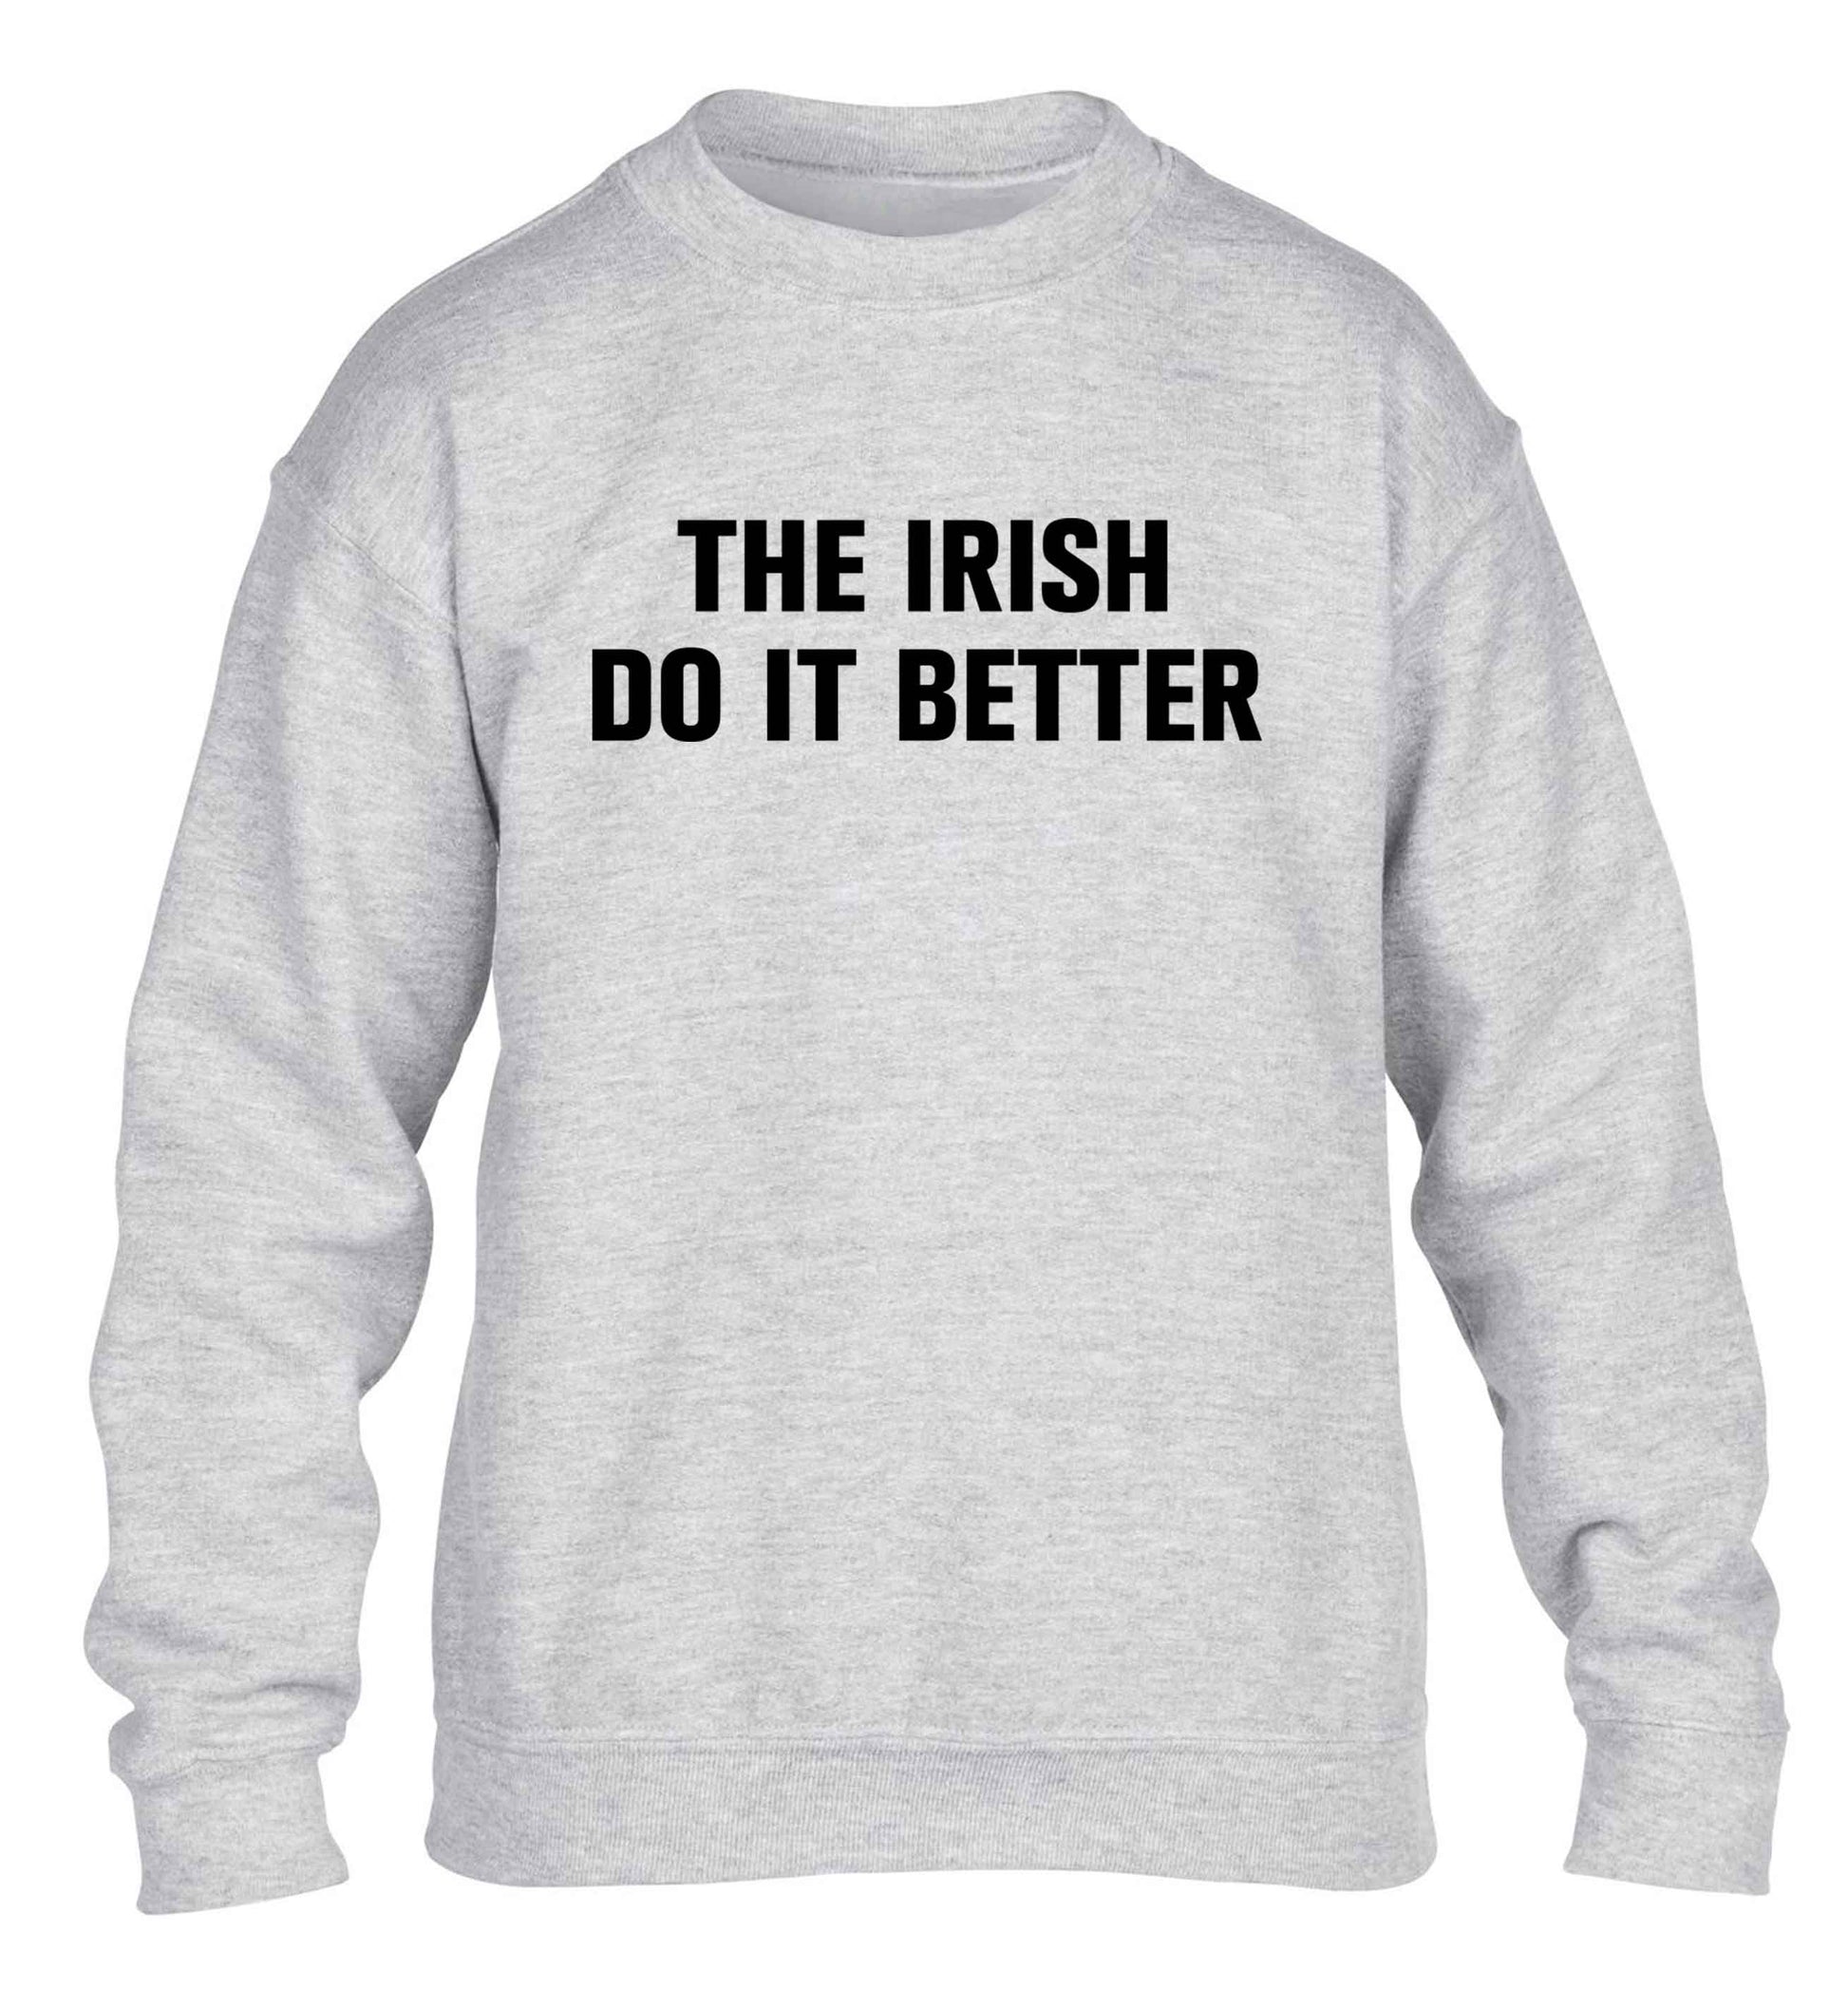 The Irish do it better children's grey sweater 12-13 Years